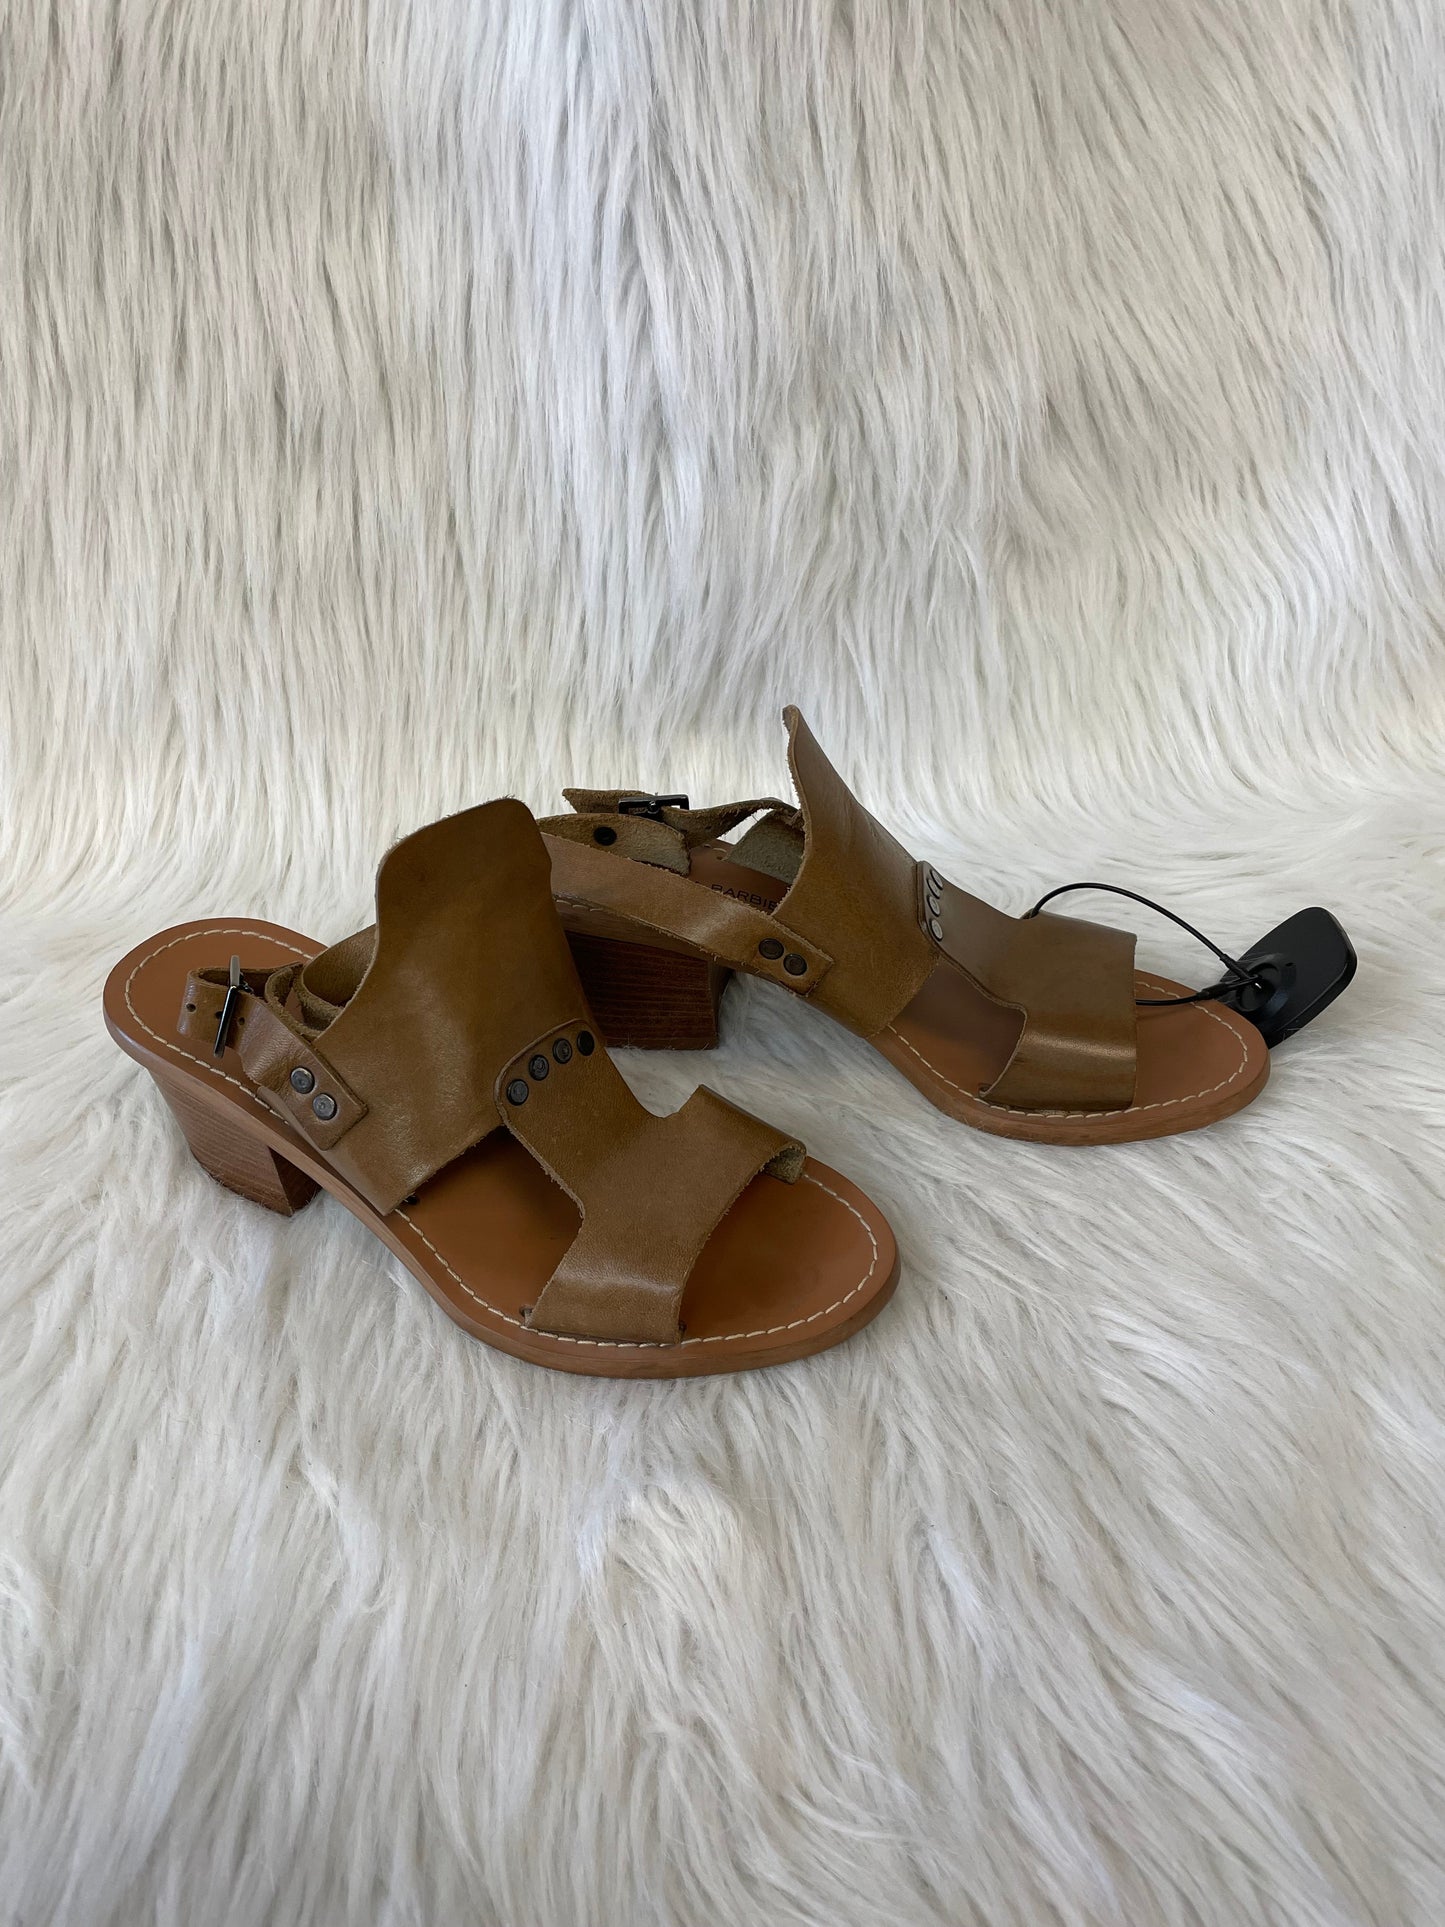 Brown Sandals Heels Block Cmc, Size 7